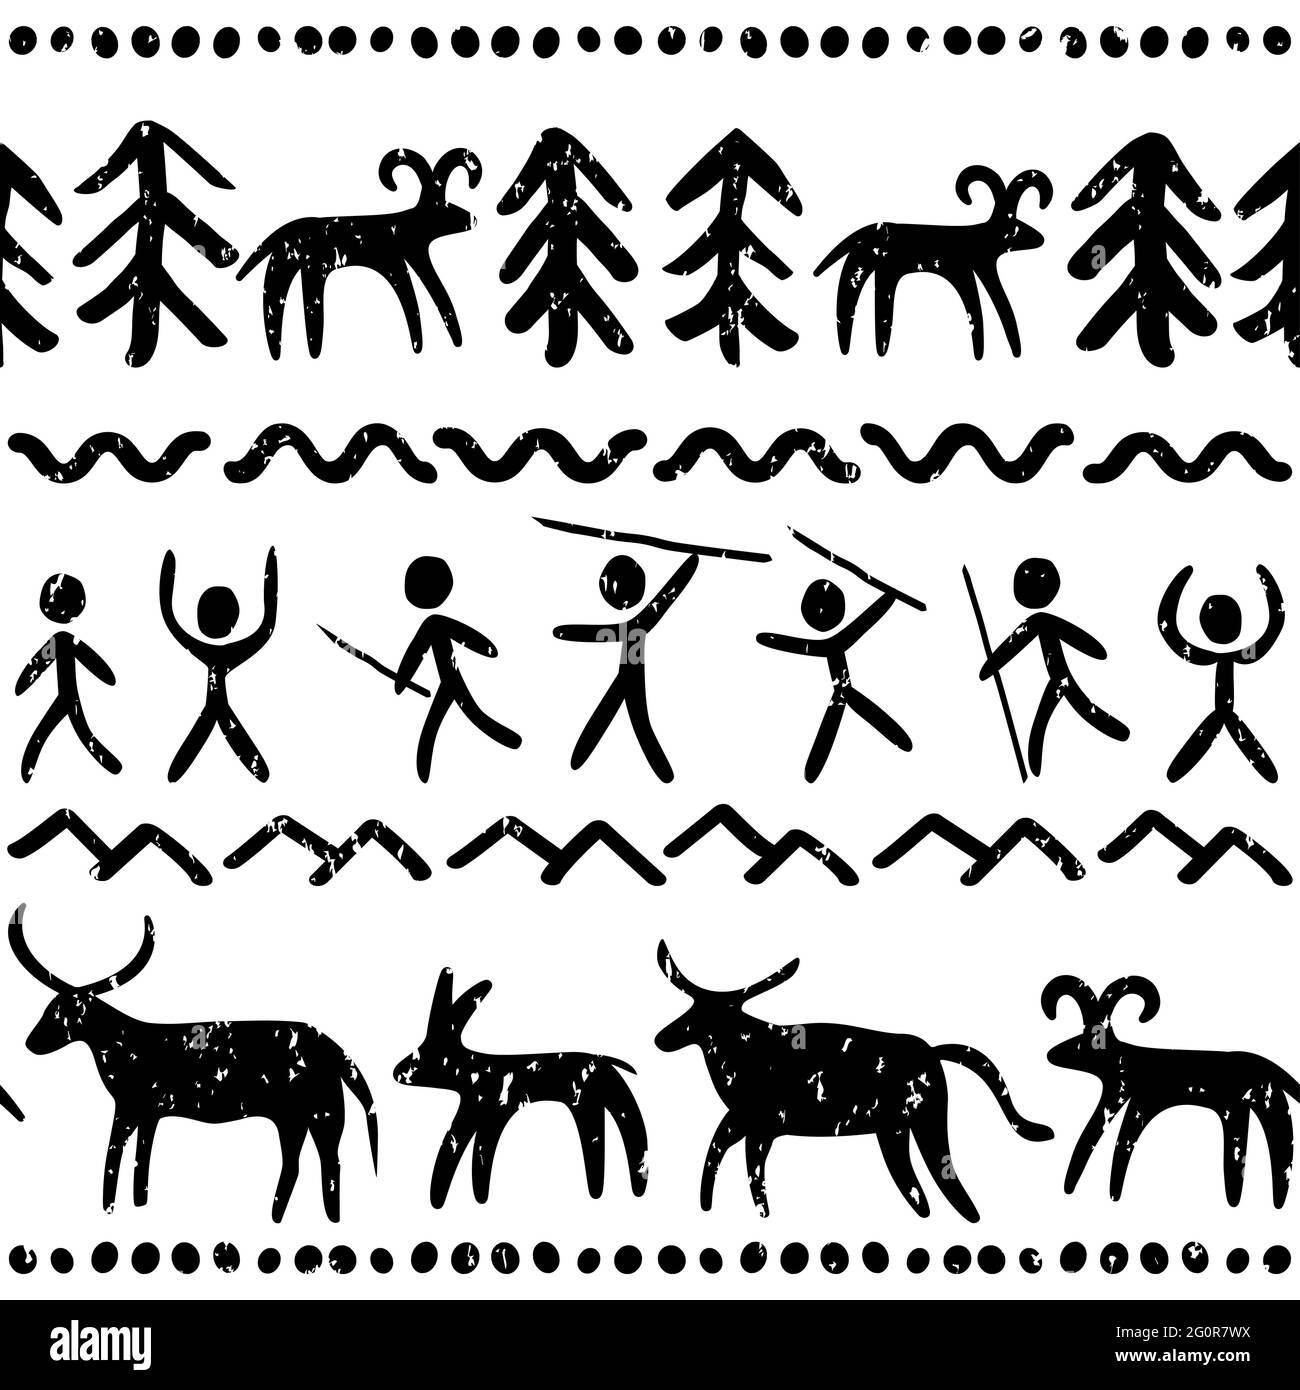 Prähostorische Höhlenmalereien Kunstvektor nahtlose Muster in schwarz-weiß, primitive Design inspiriert von Steinzeichnungen mit Menschen und Tieren Stock Vektor